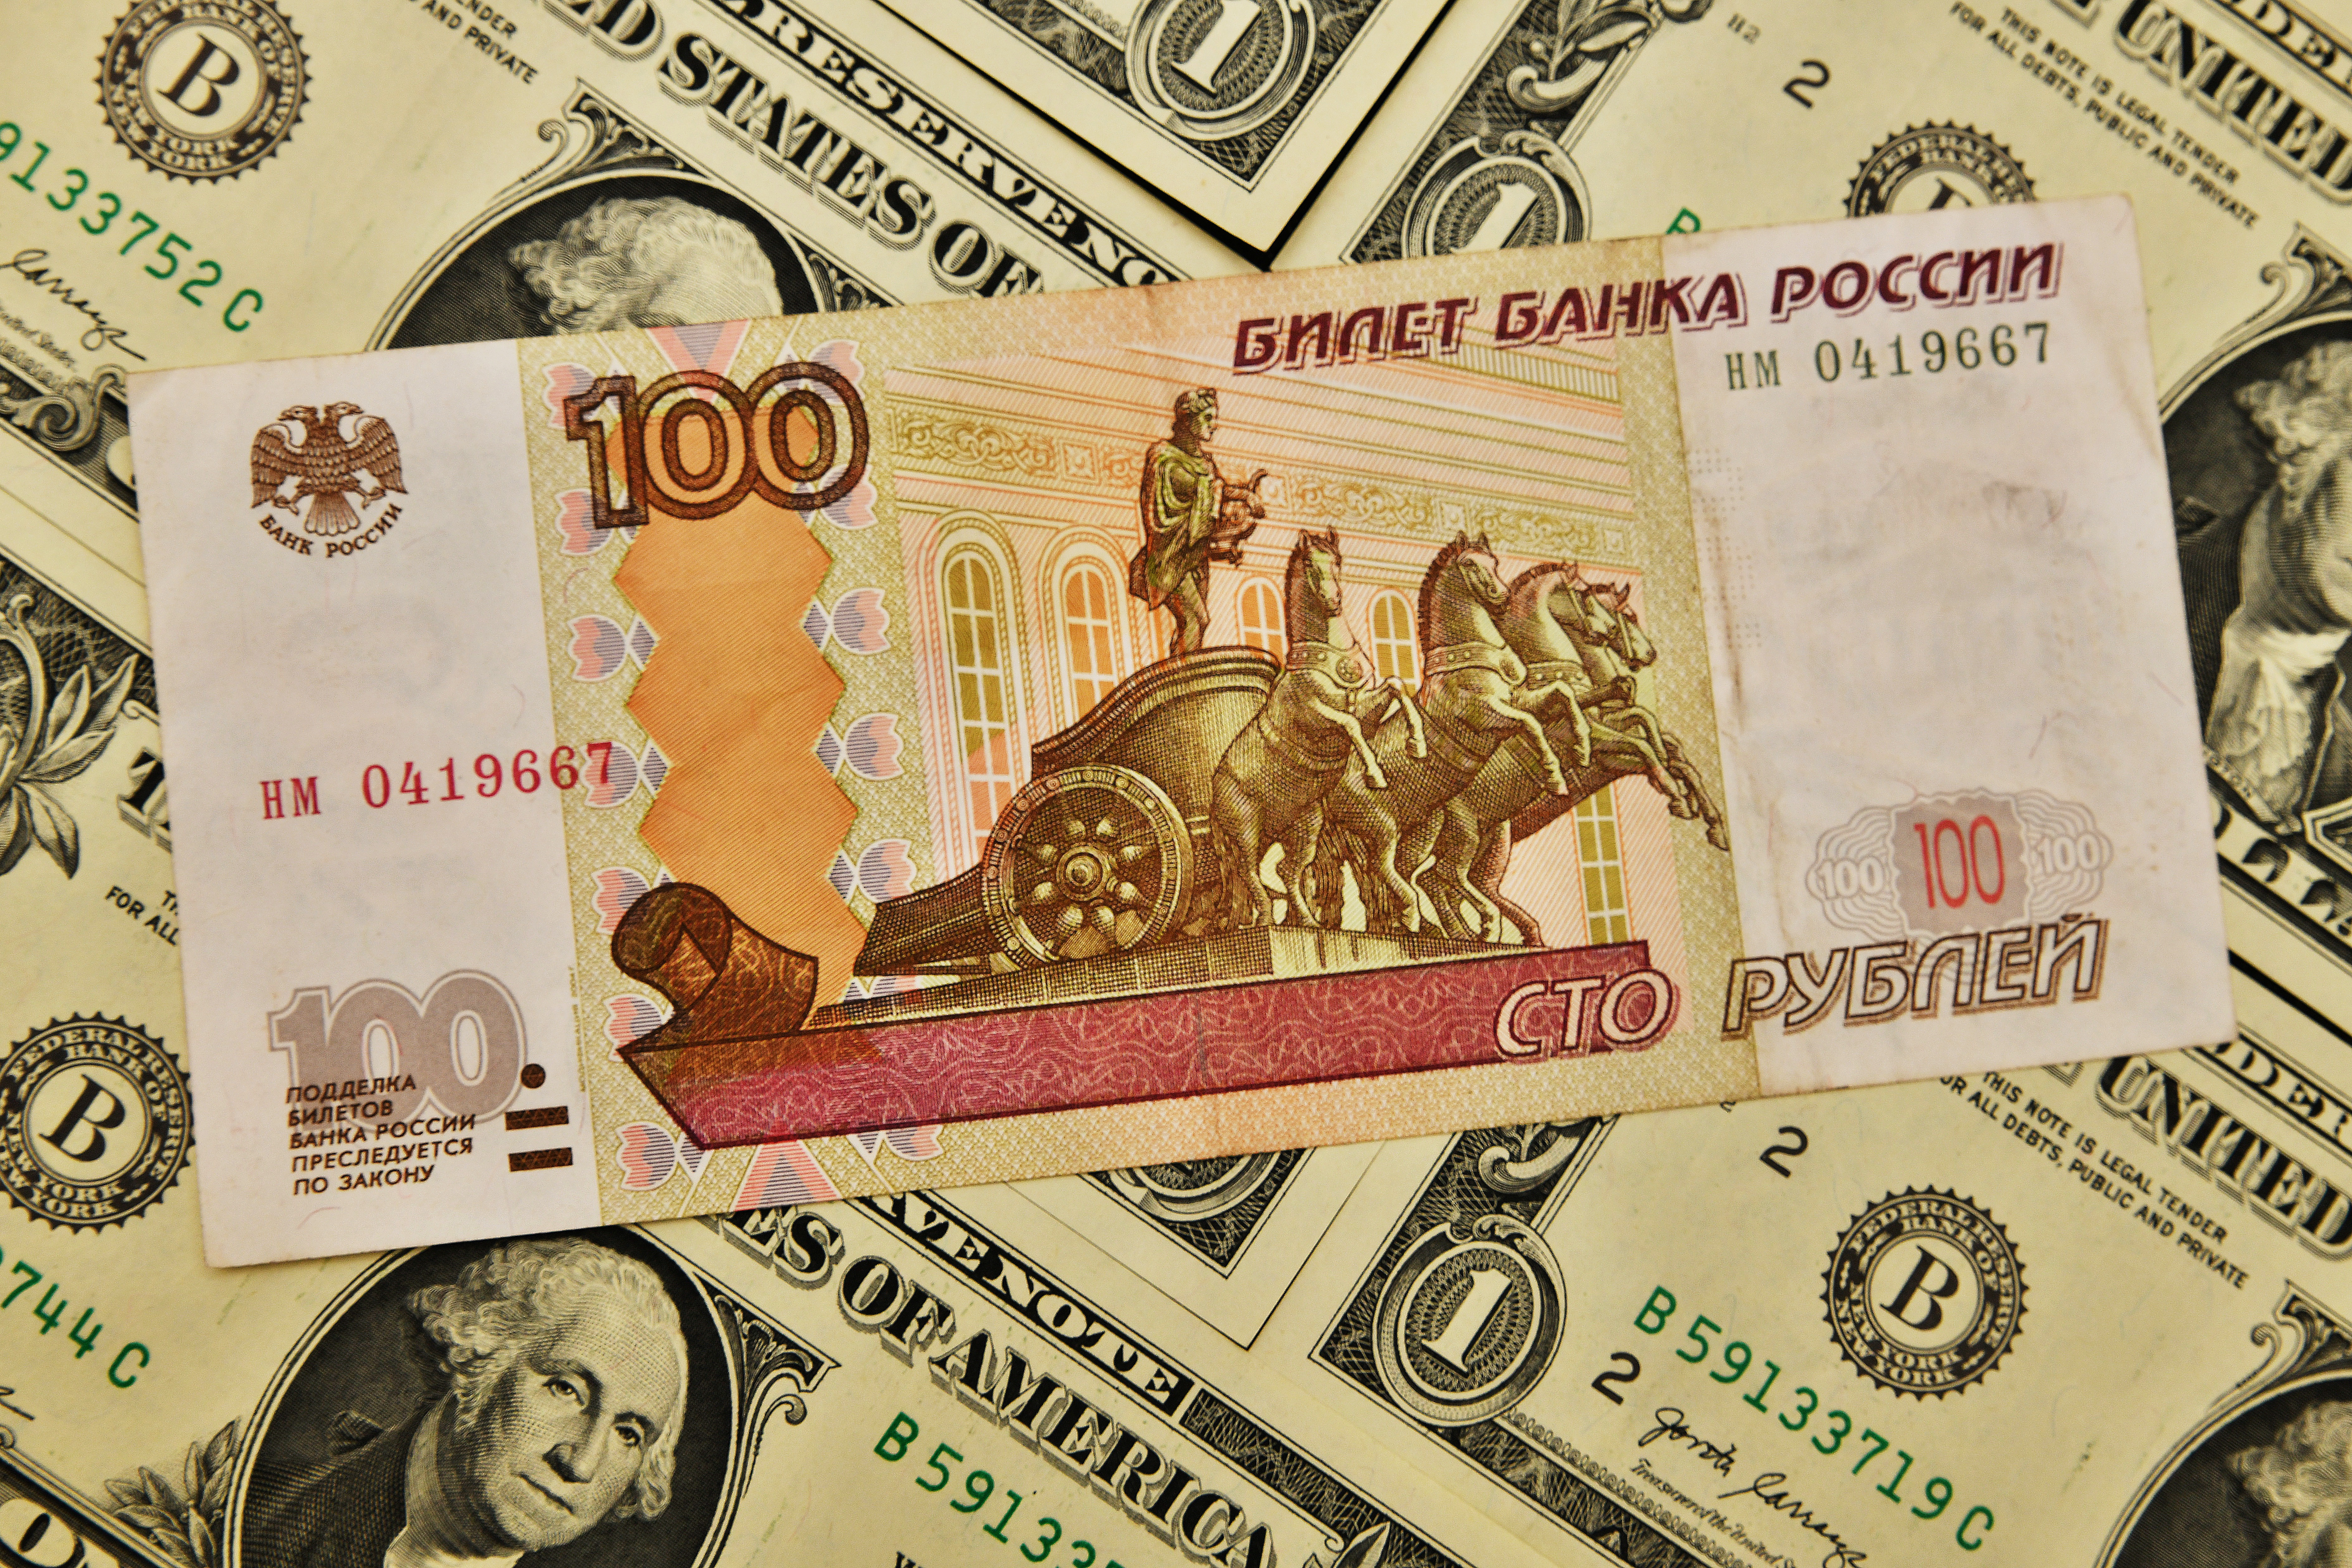 300 рублей россии в долларах. Валюта России. Валюта рубль. Российская валюта фото. Деньги это в экономике.